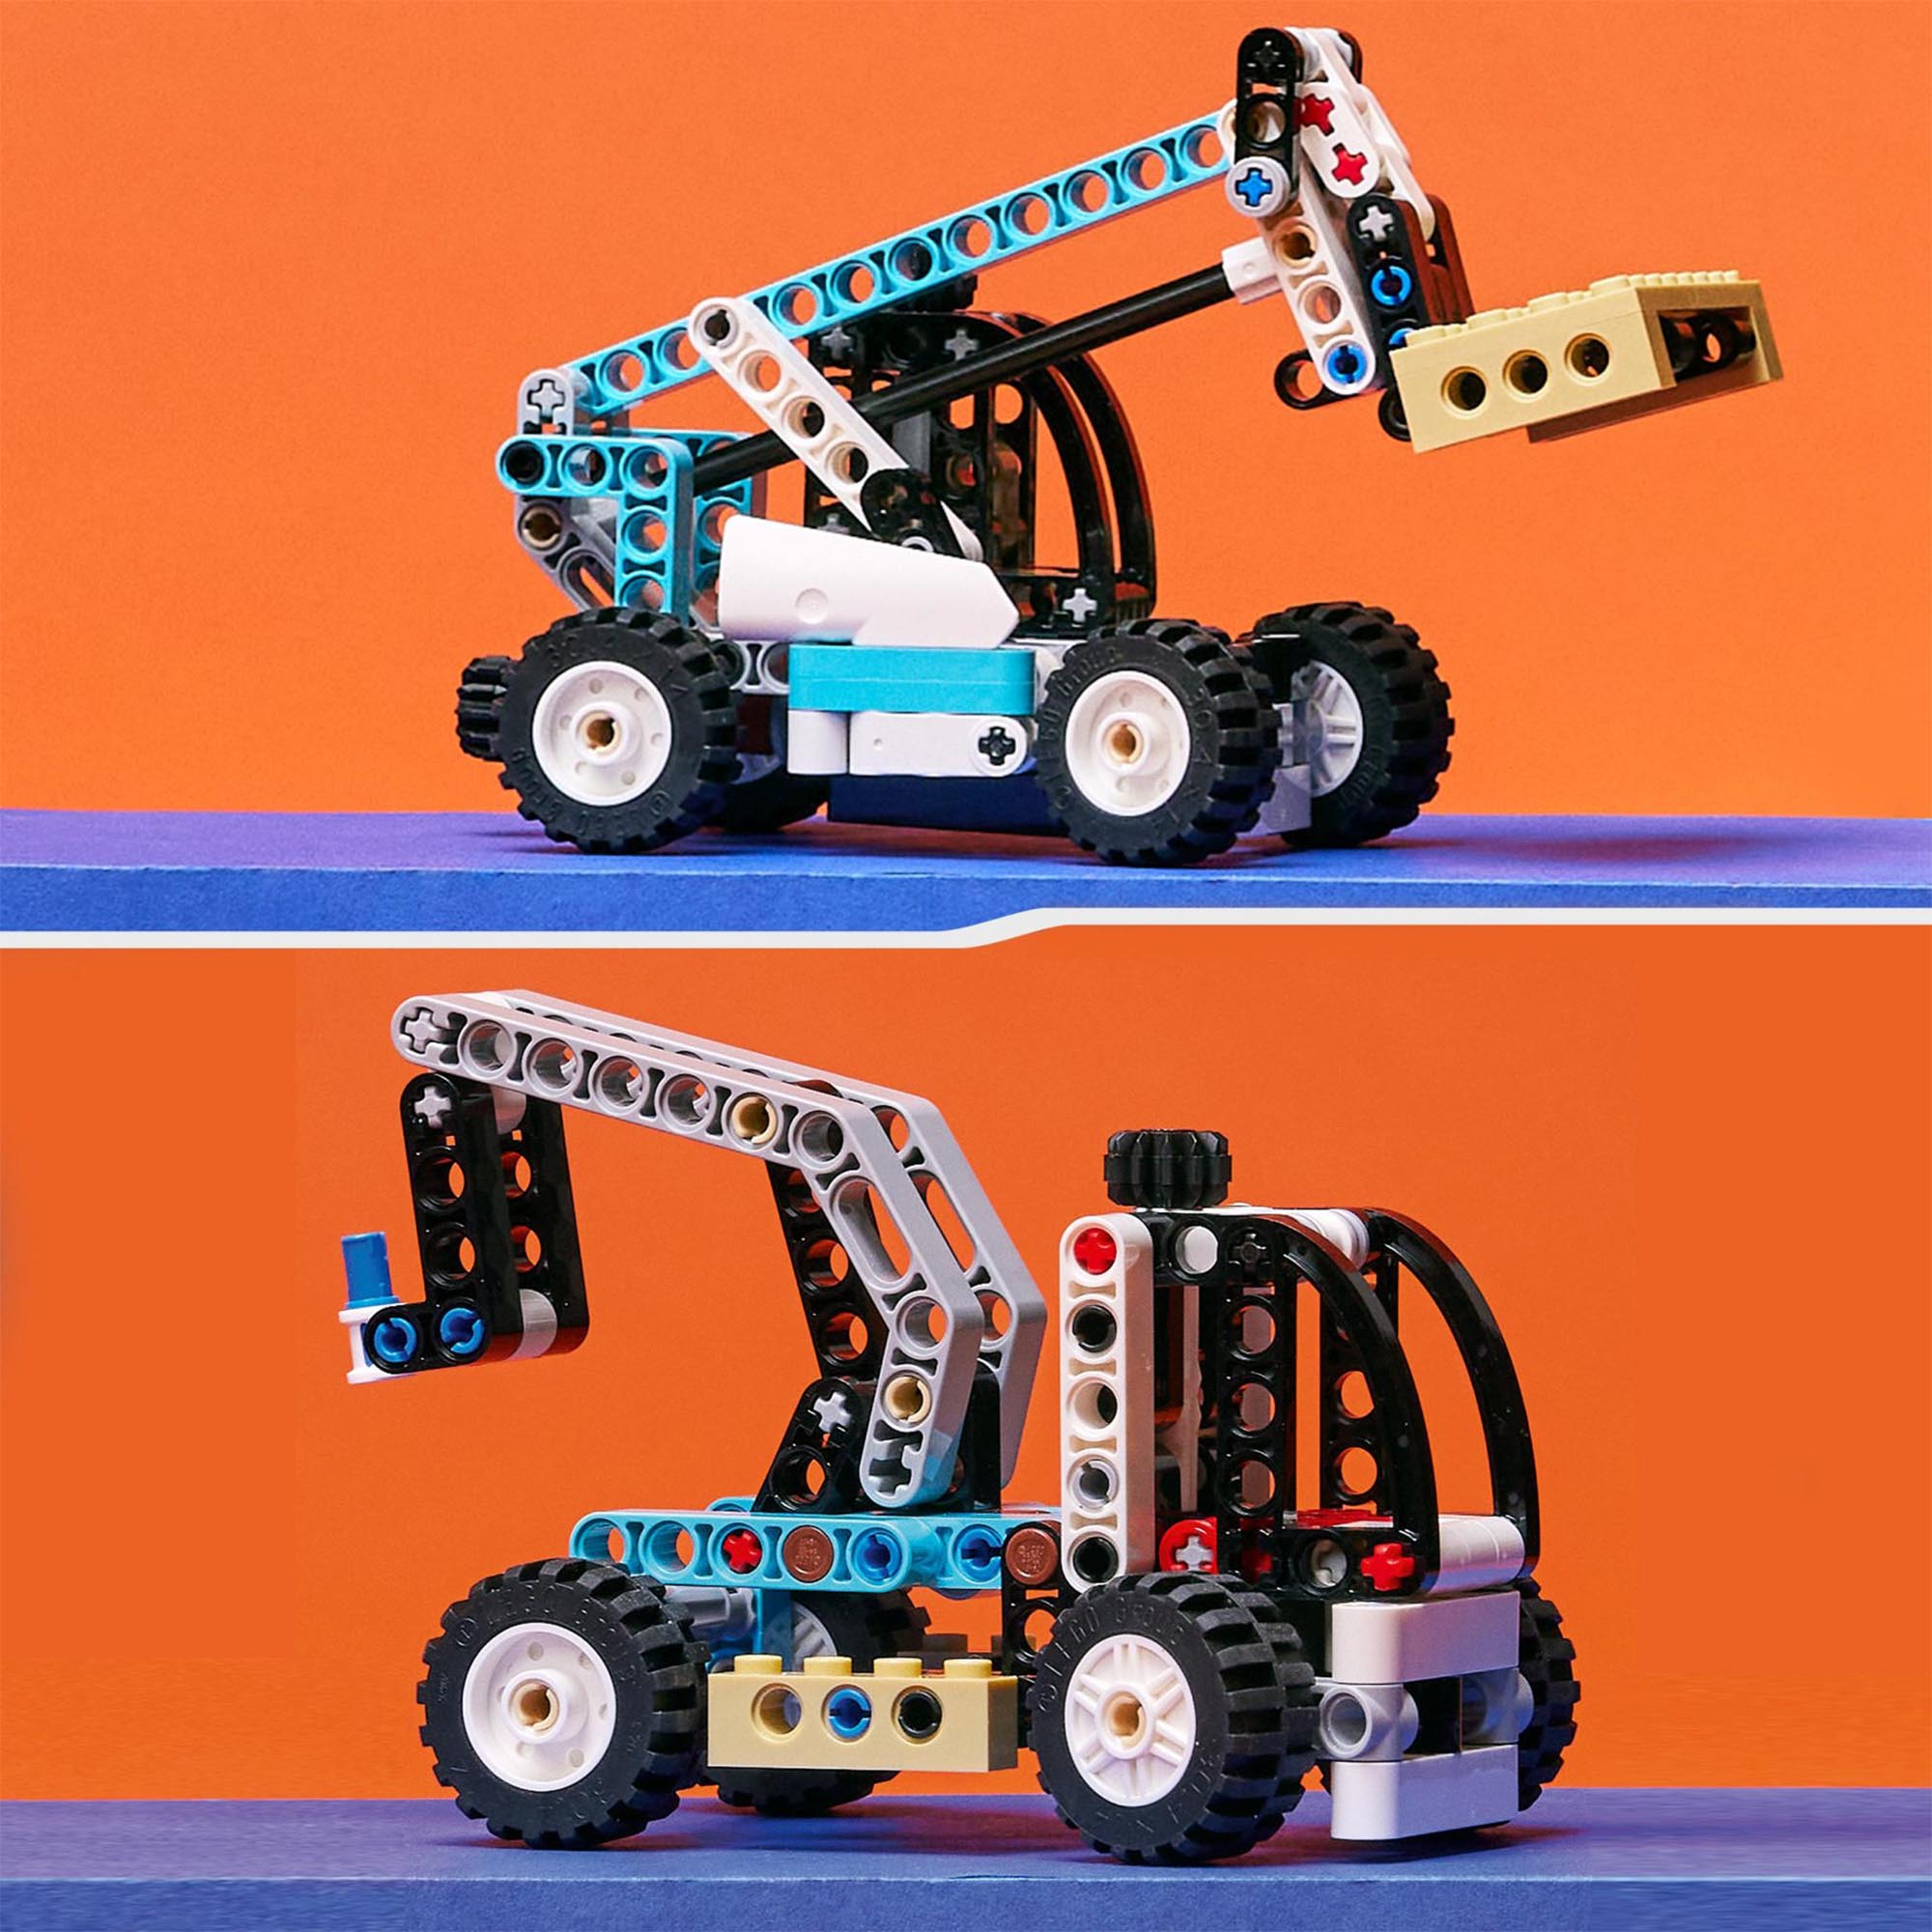 LEGO Technic Sollevatore Telescopico, Set 2in1 Camion Giocattolo e Carrello Elev 42133, , large